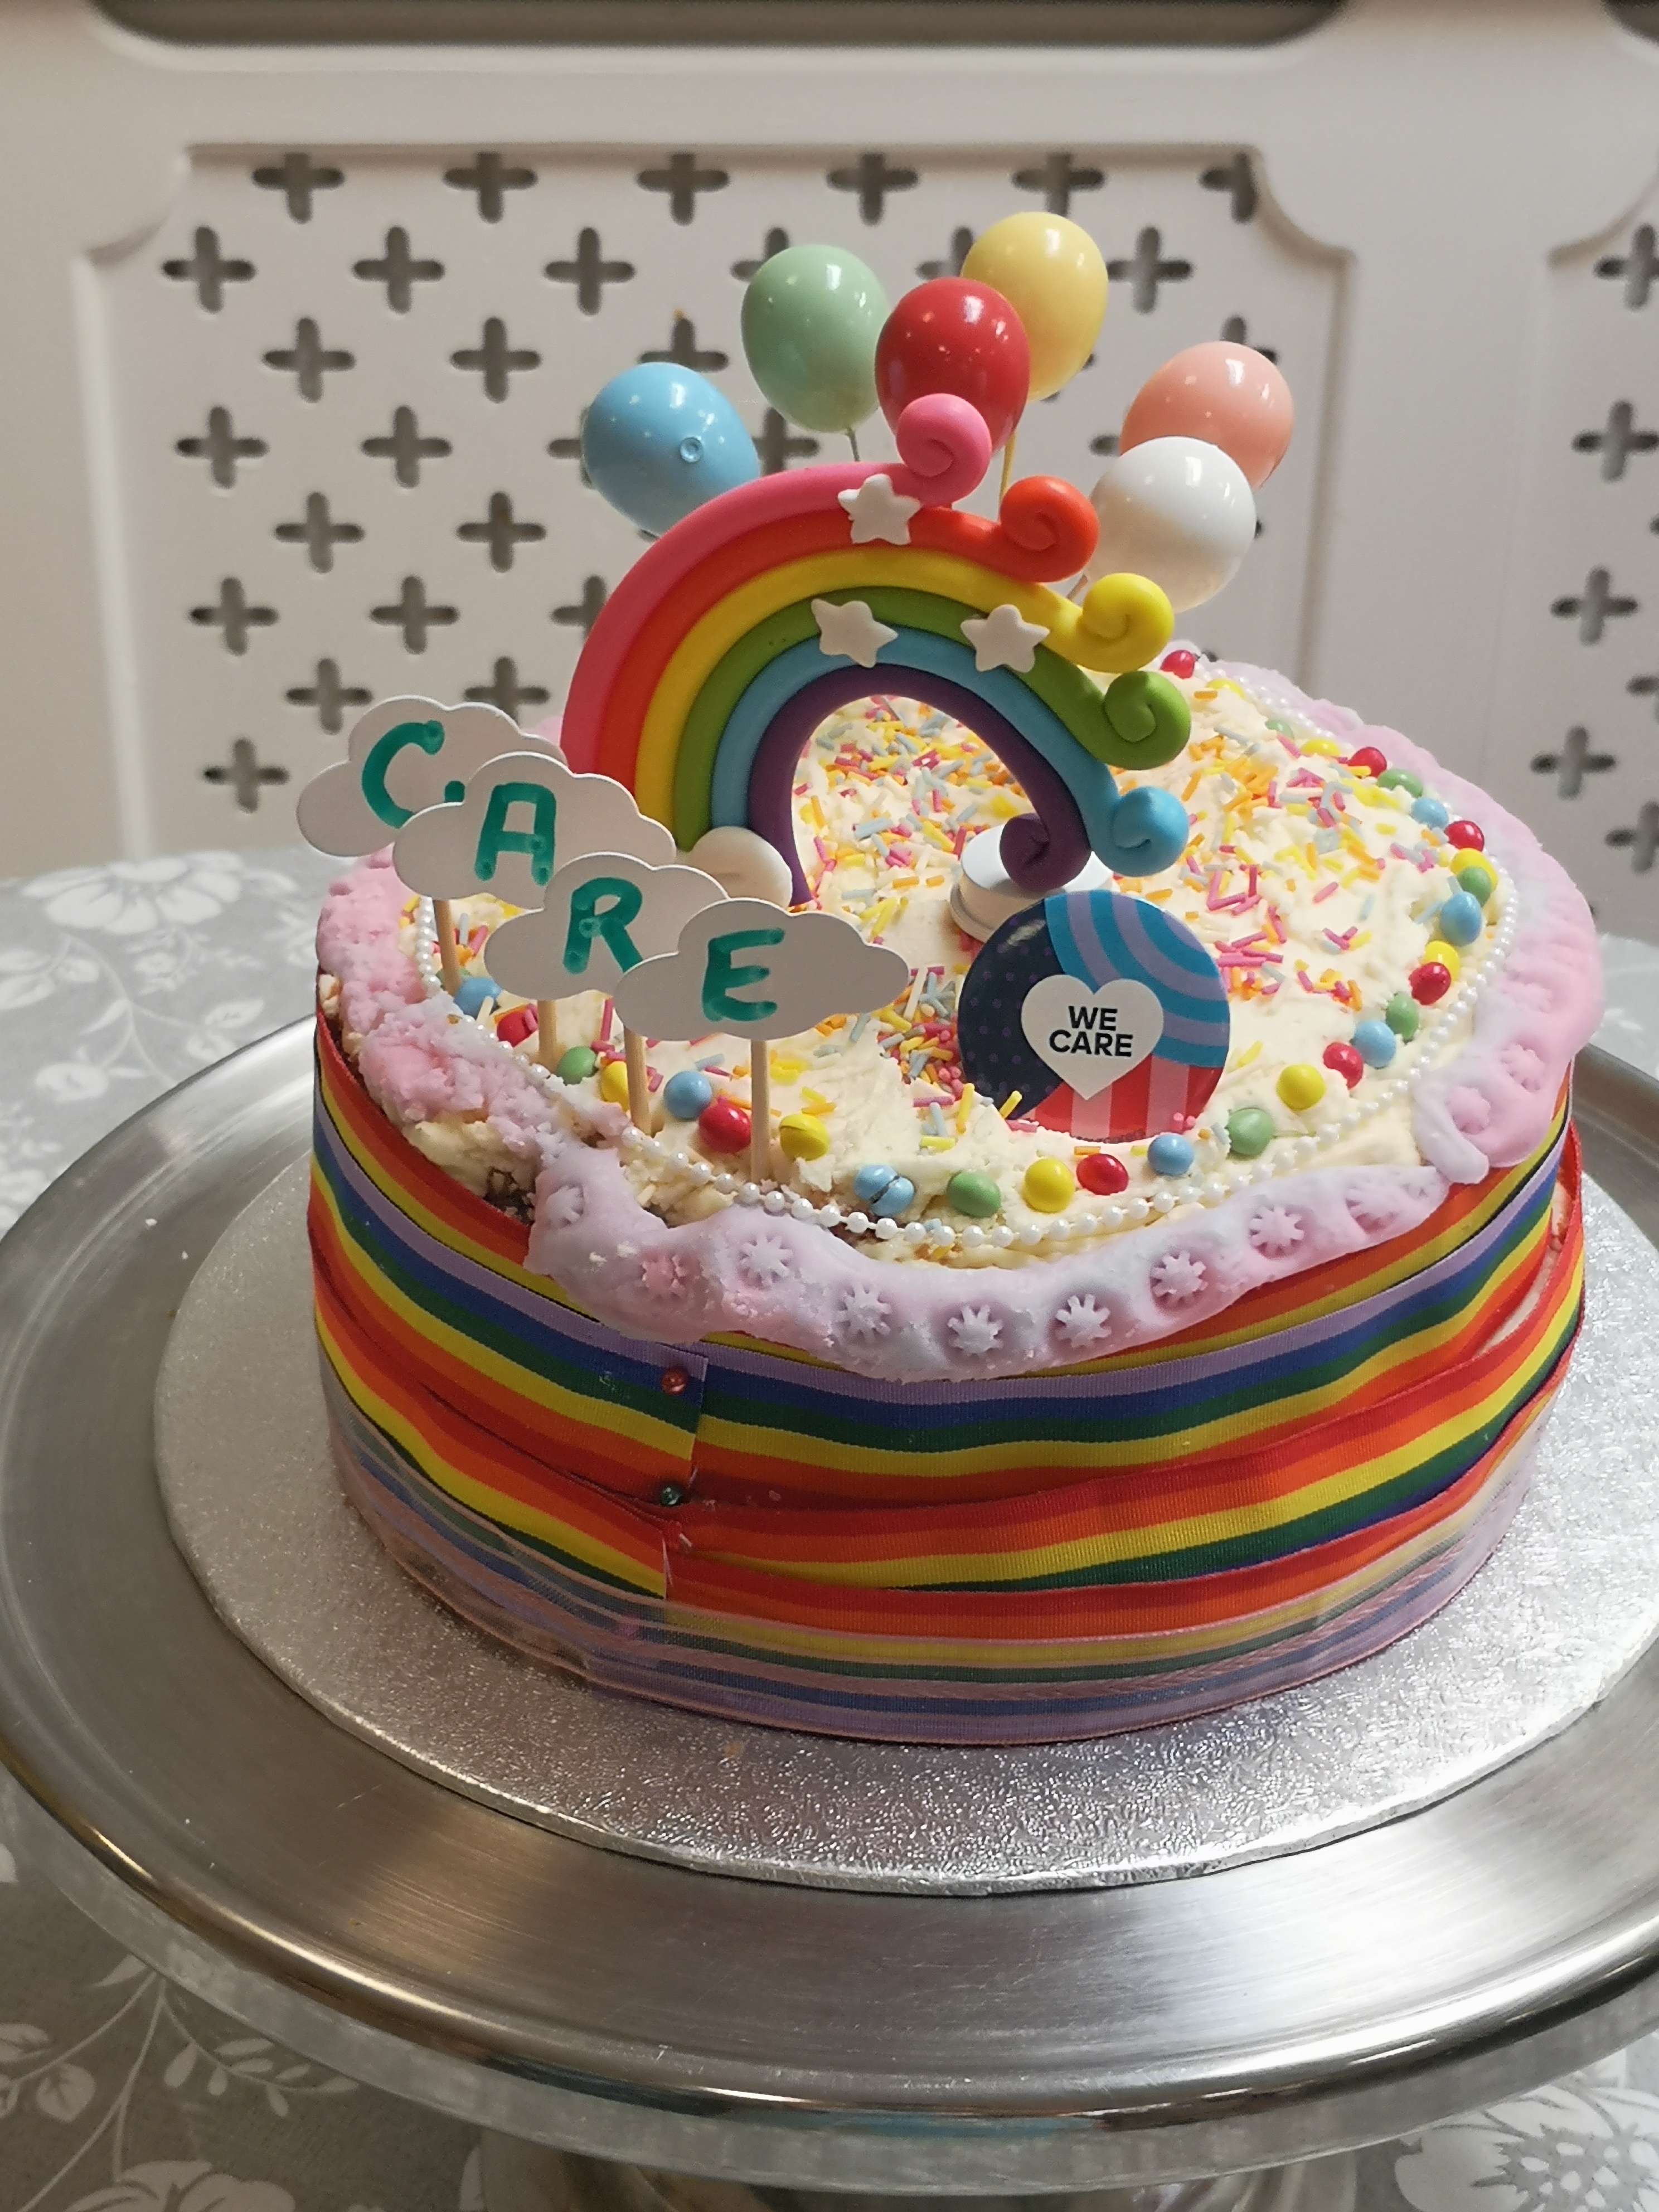 best piccy 2 of cake rainbows.jpg